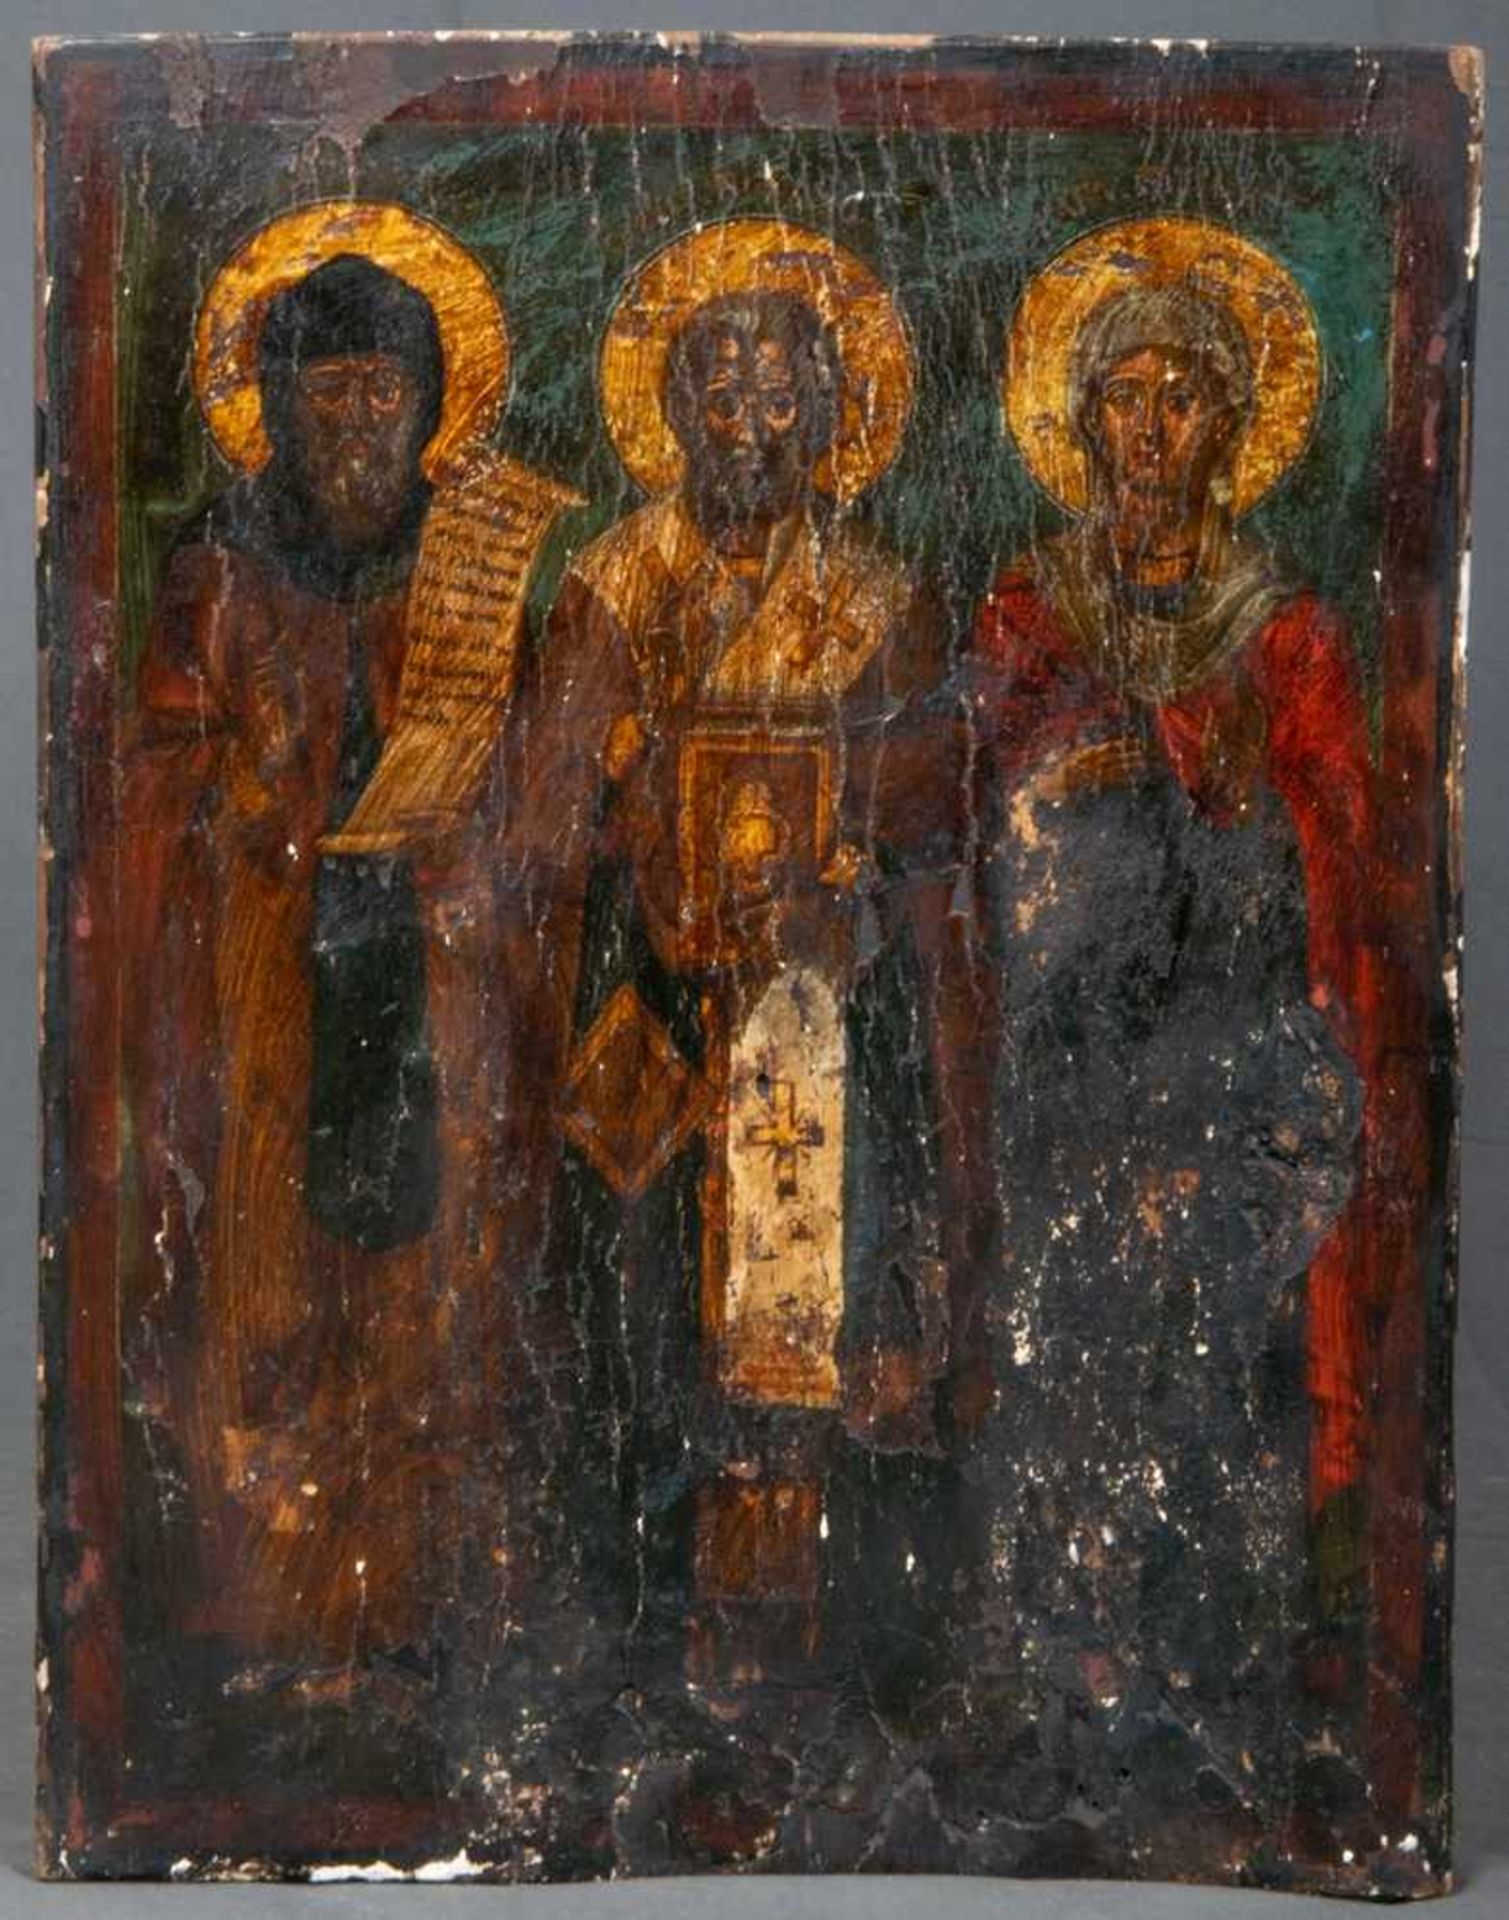 Alte oder antike Ikone mit Darstellung dreier Heiliger. Eitempera auf Eichenholztafel, ca. 48 x 37